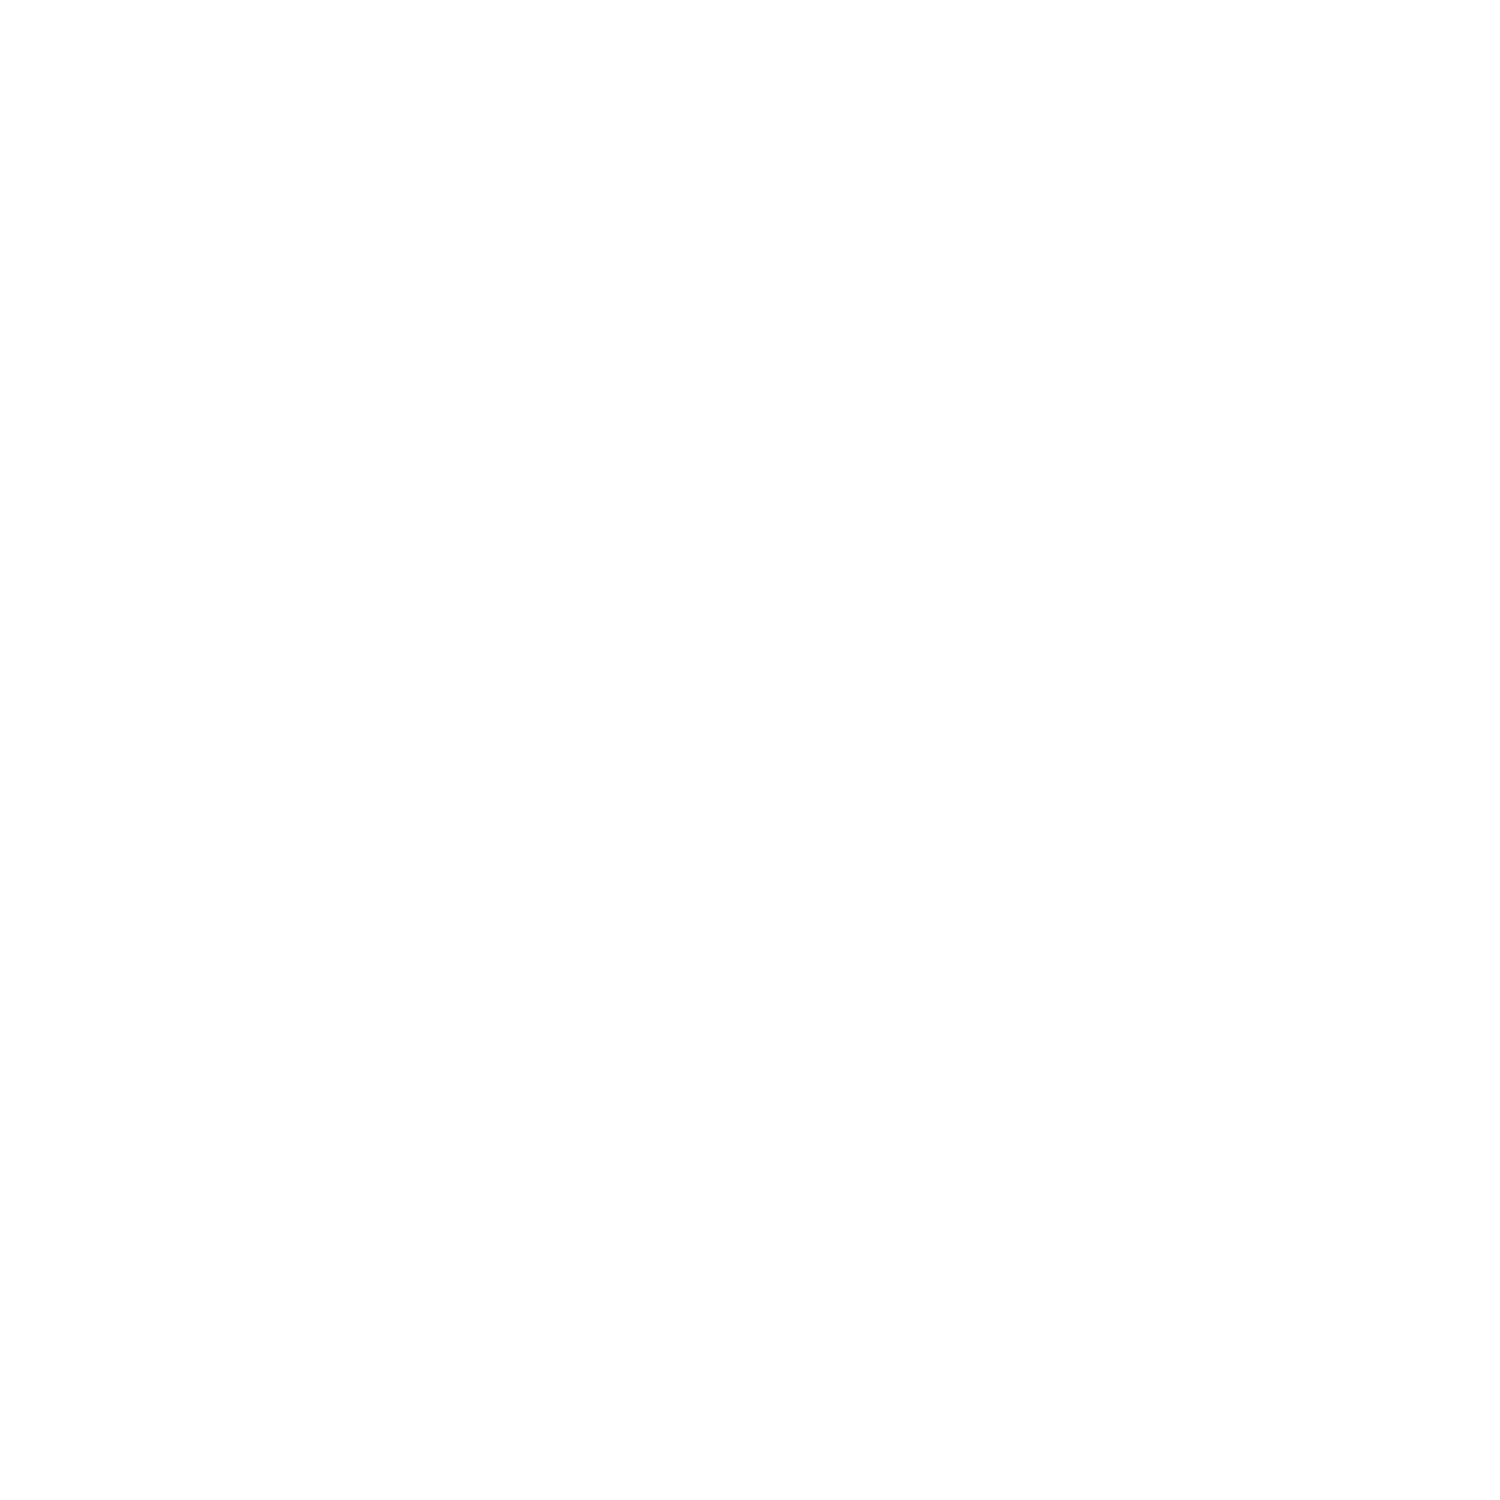 Caffe Motivo